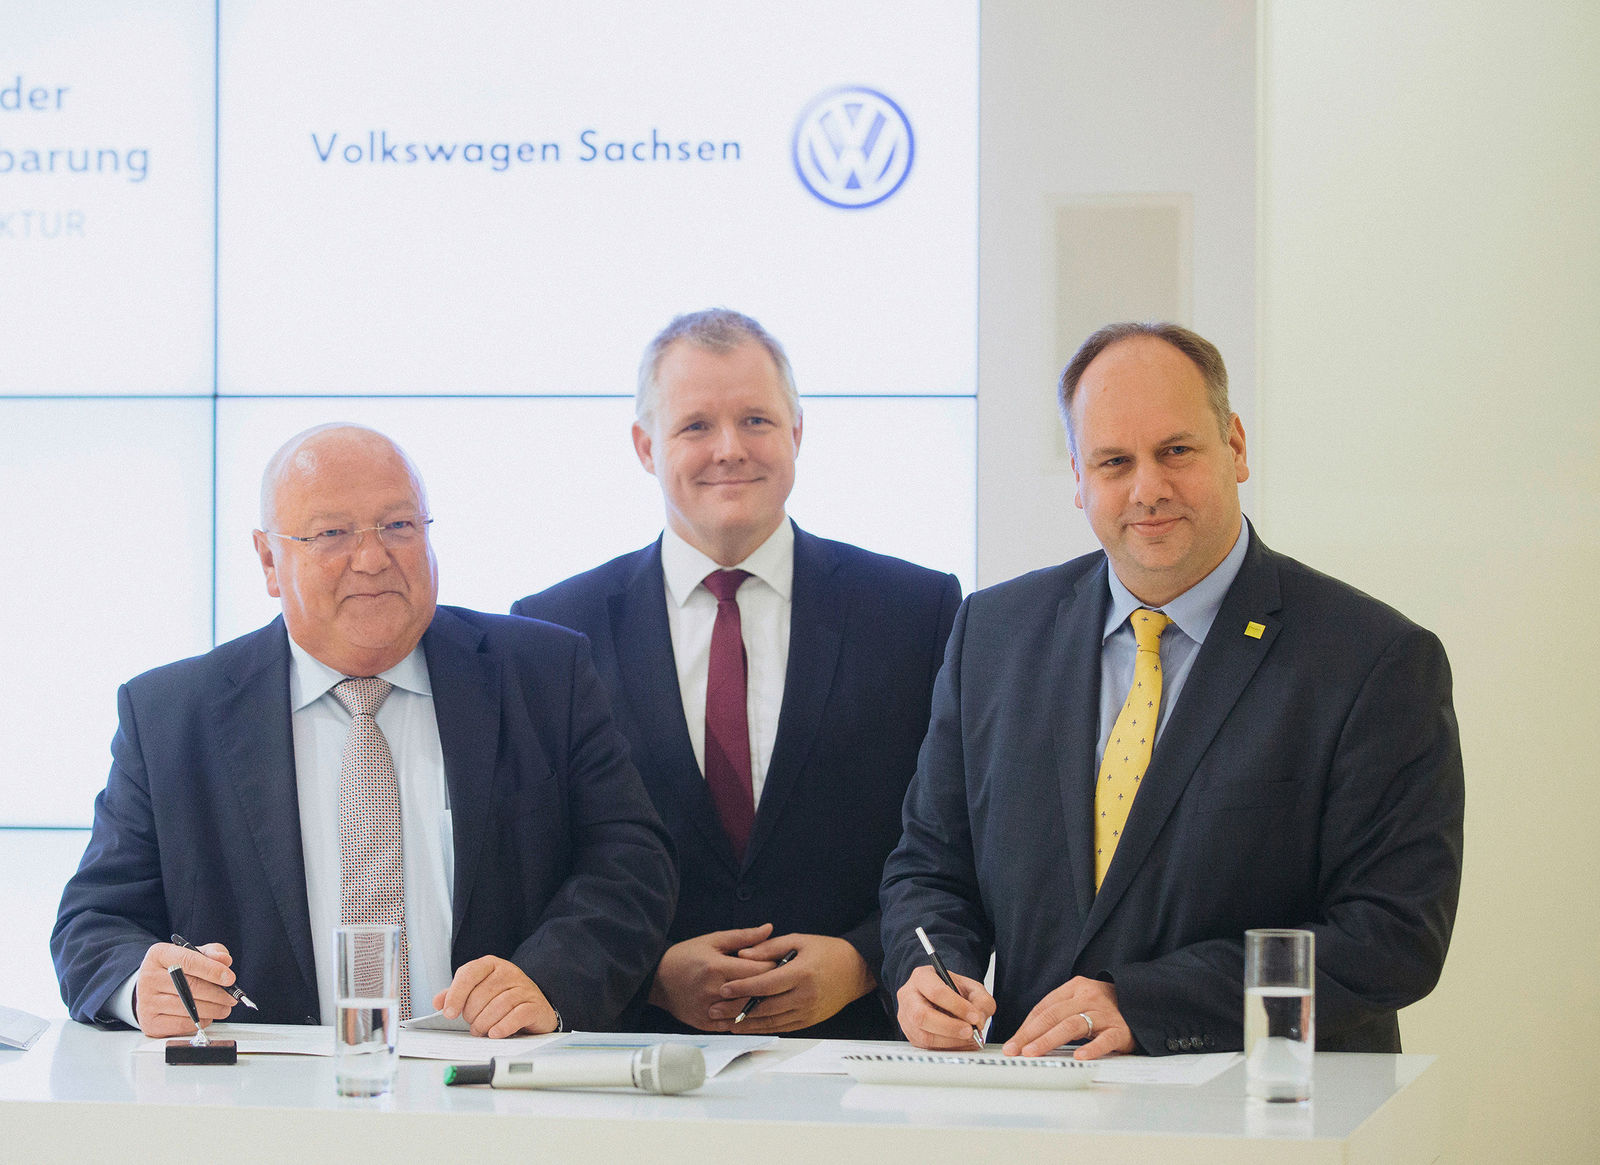 Volkswagen Sachsen und Landeshauptstadt Dresden vereinbaren Partnerschaft zu Elektromobilität und Digitalisierung